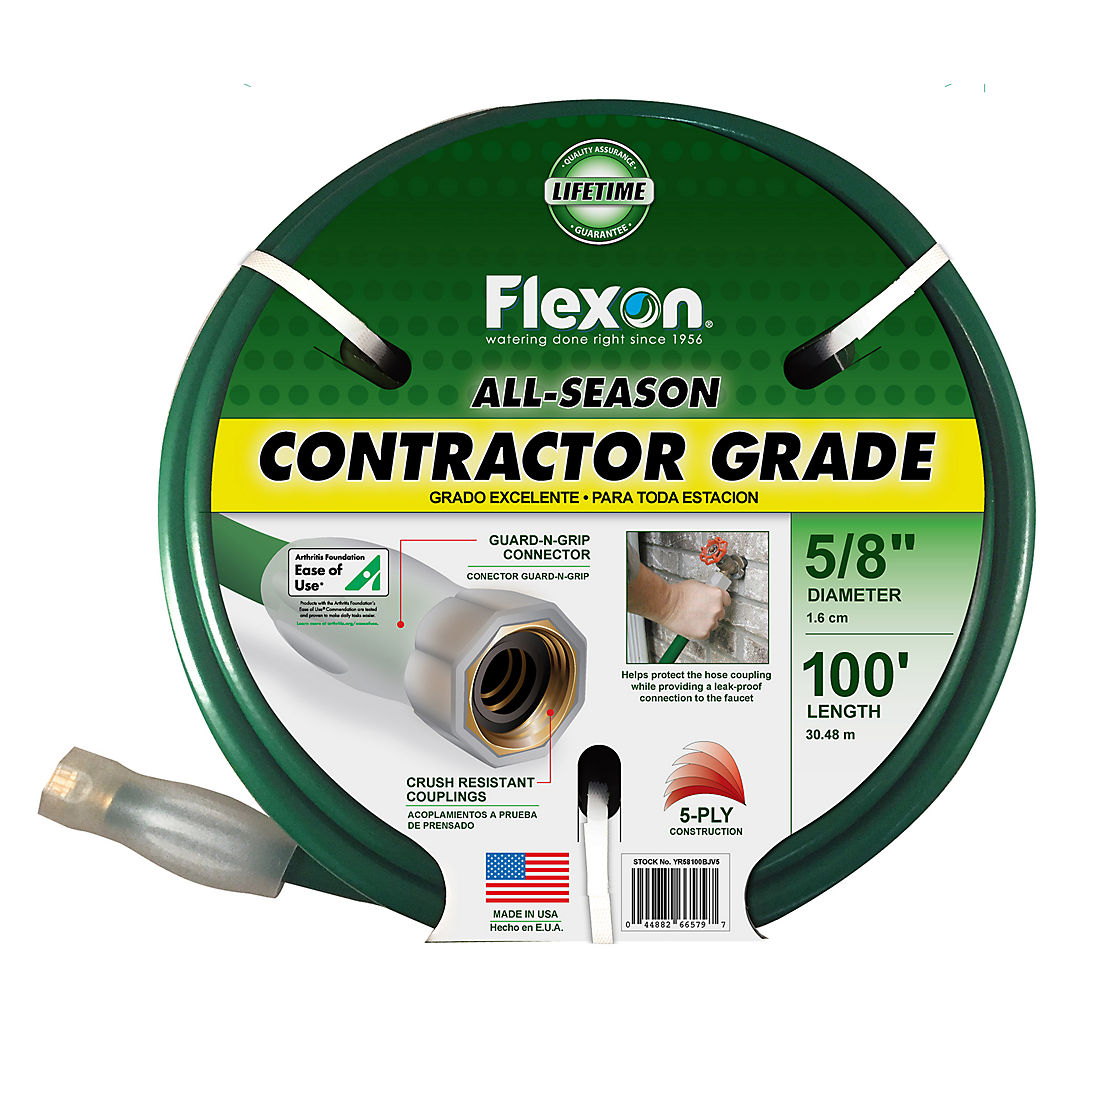 Flexon 100 All Season Contractor Grade Hose Green Bjs